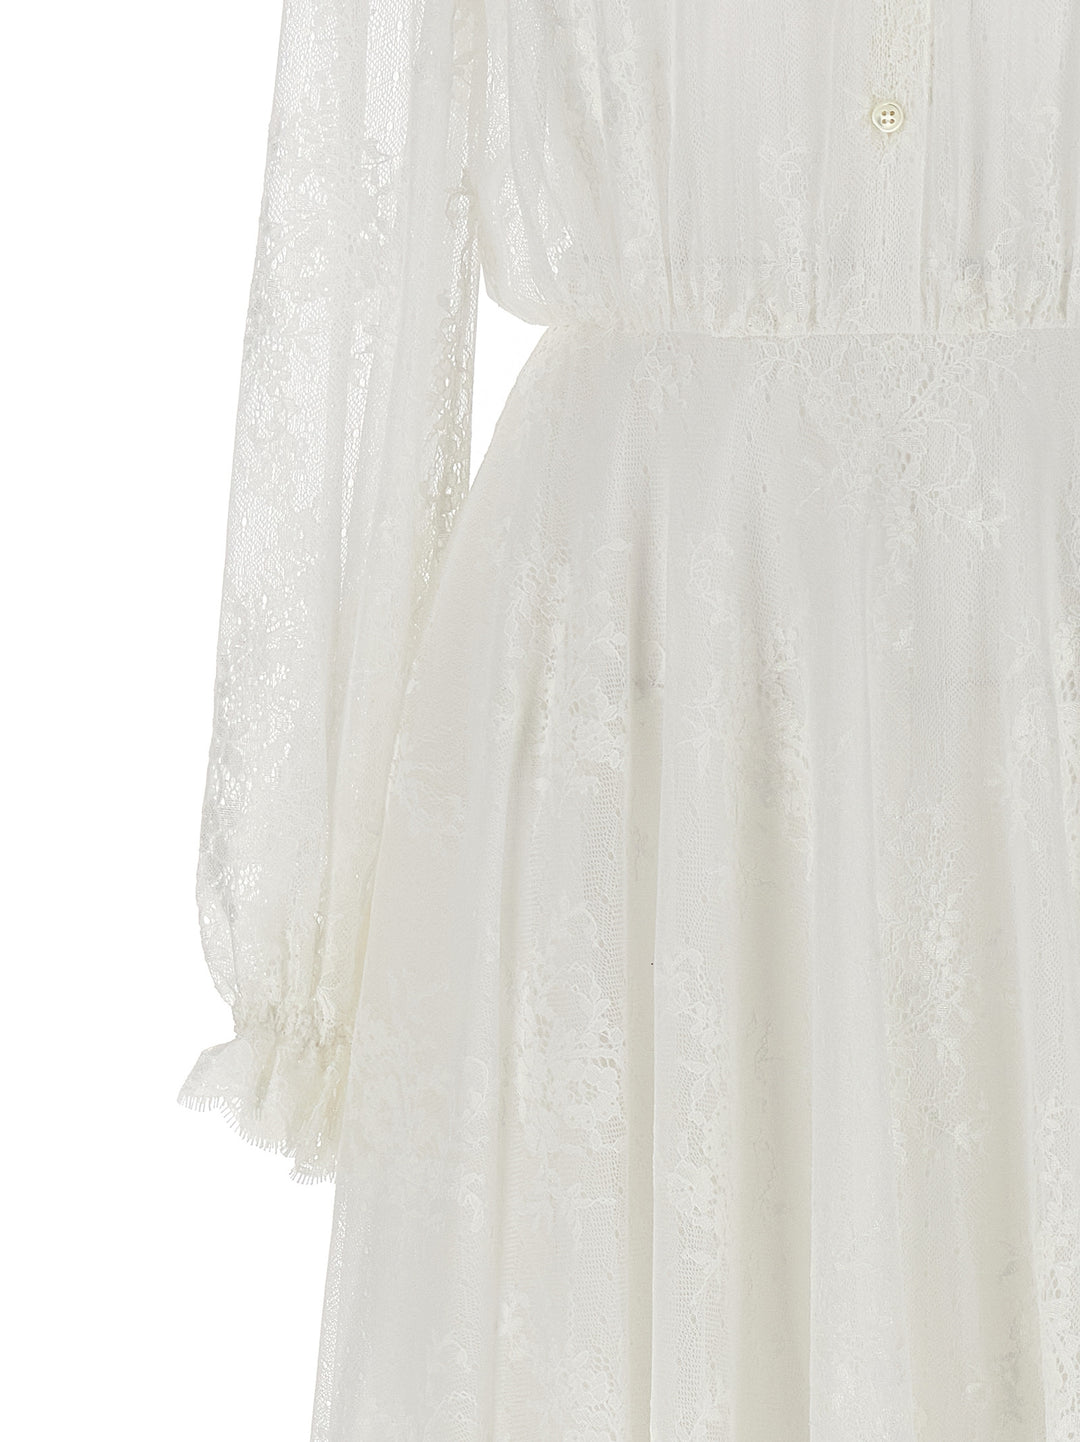 Lace Long Dress Abiti Bianco